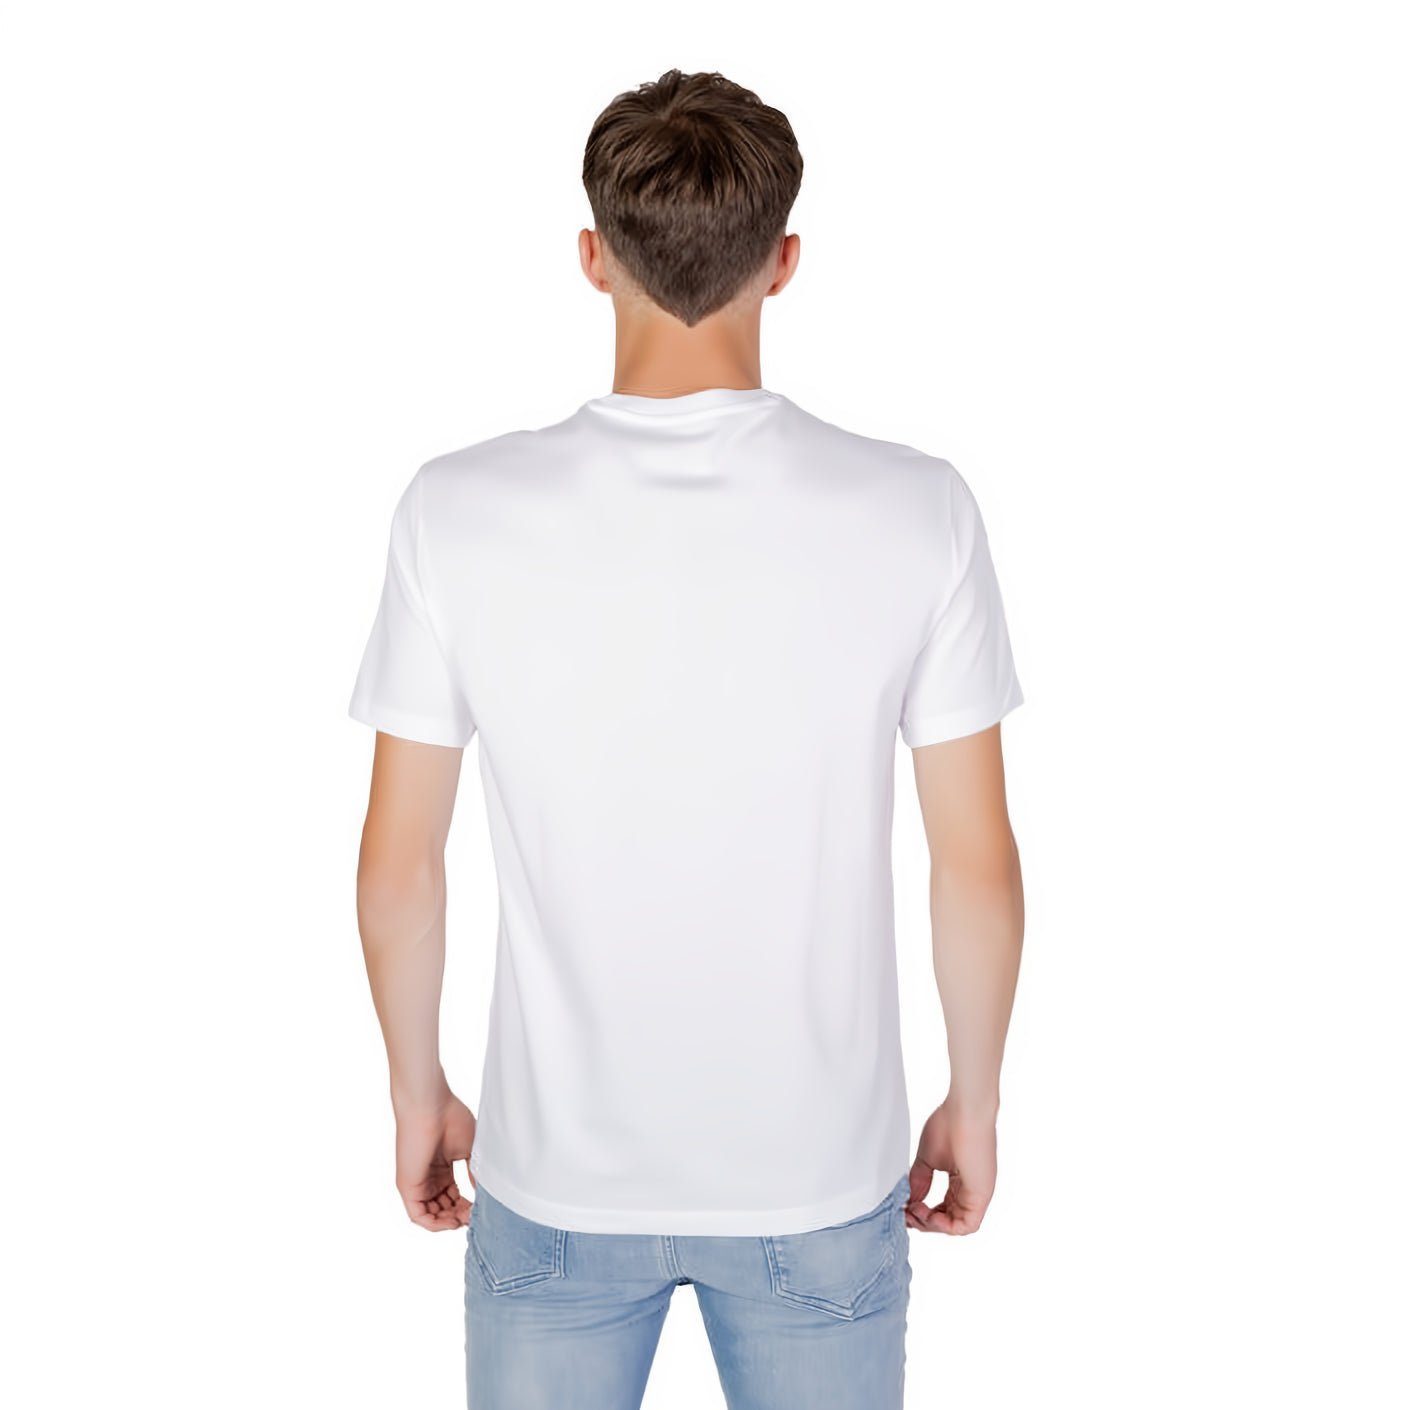 ARMANI EXCHANGE ein Ihre Rundhals, Must-Have für Kleidungskollektion! kurzarm, T-Shirt